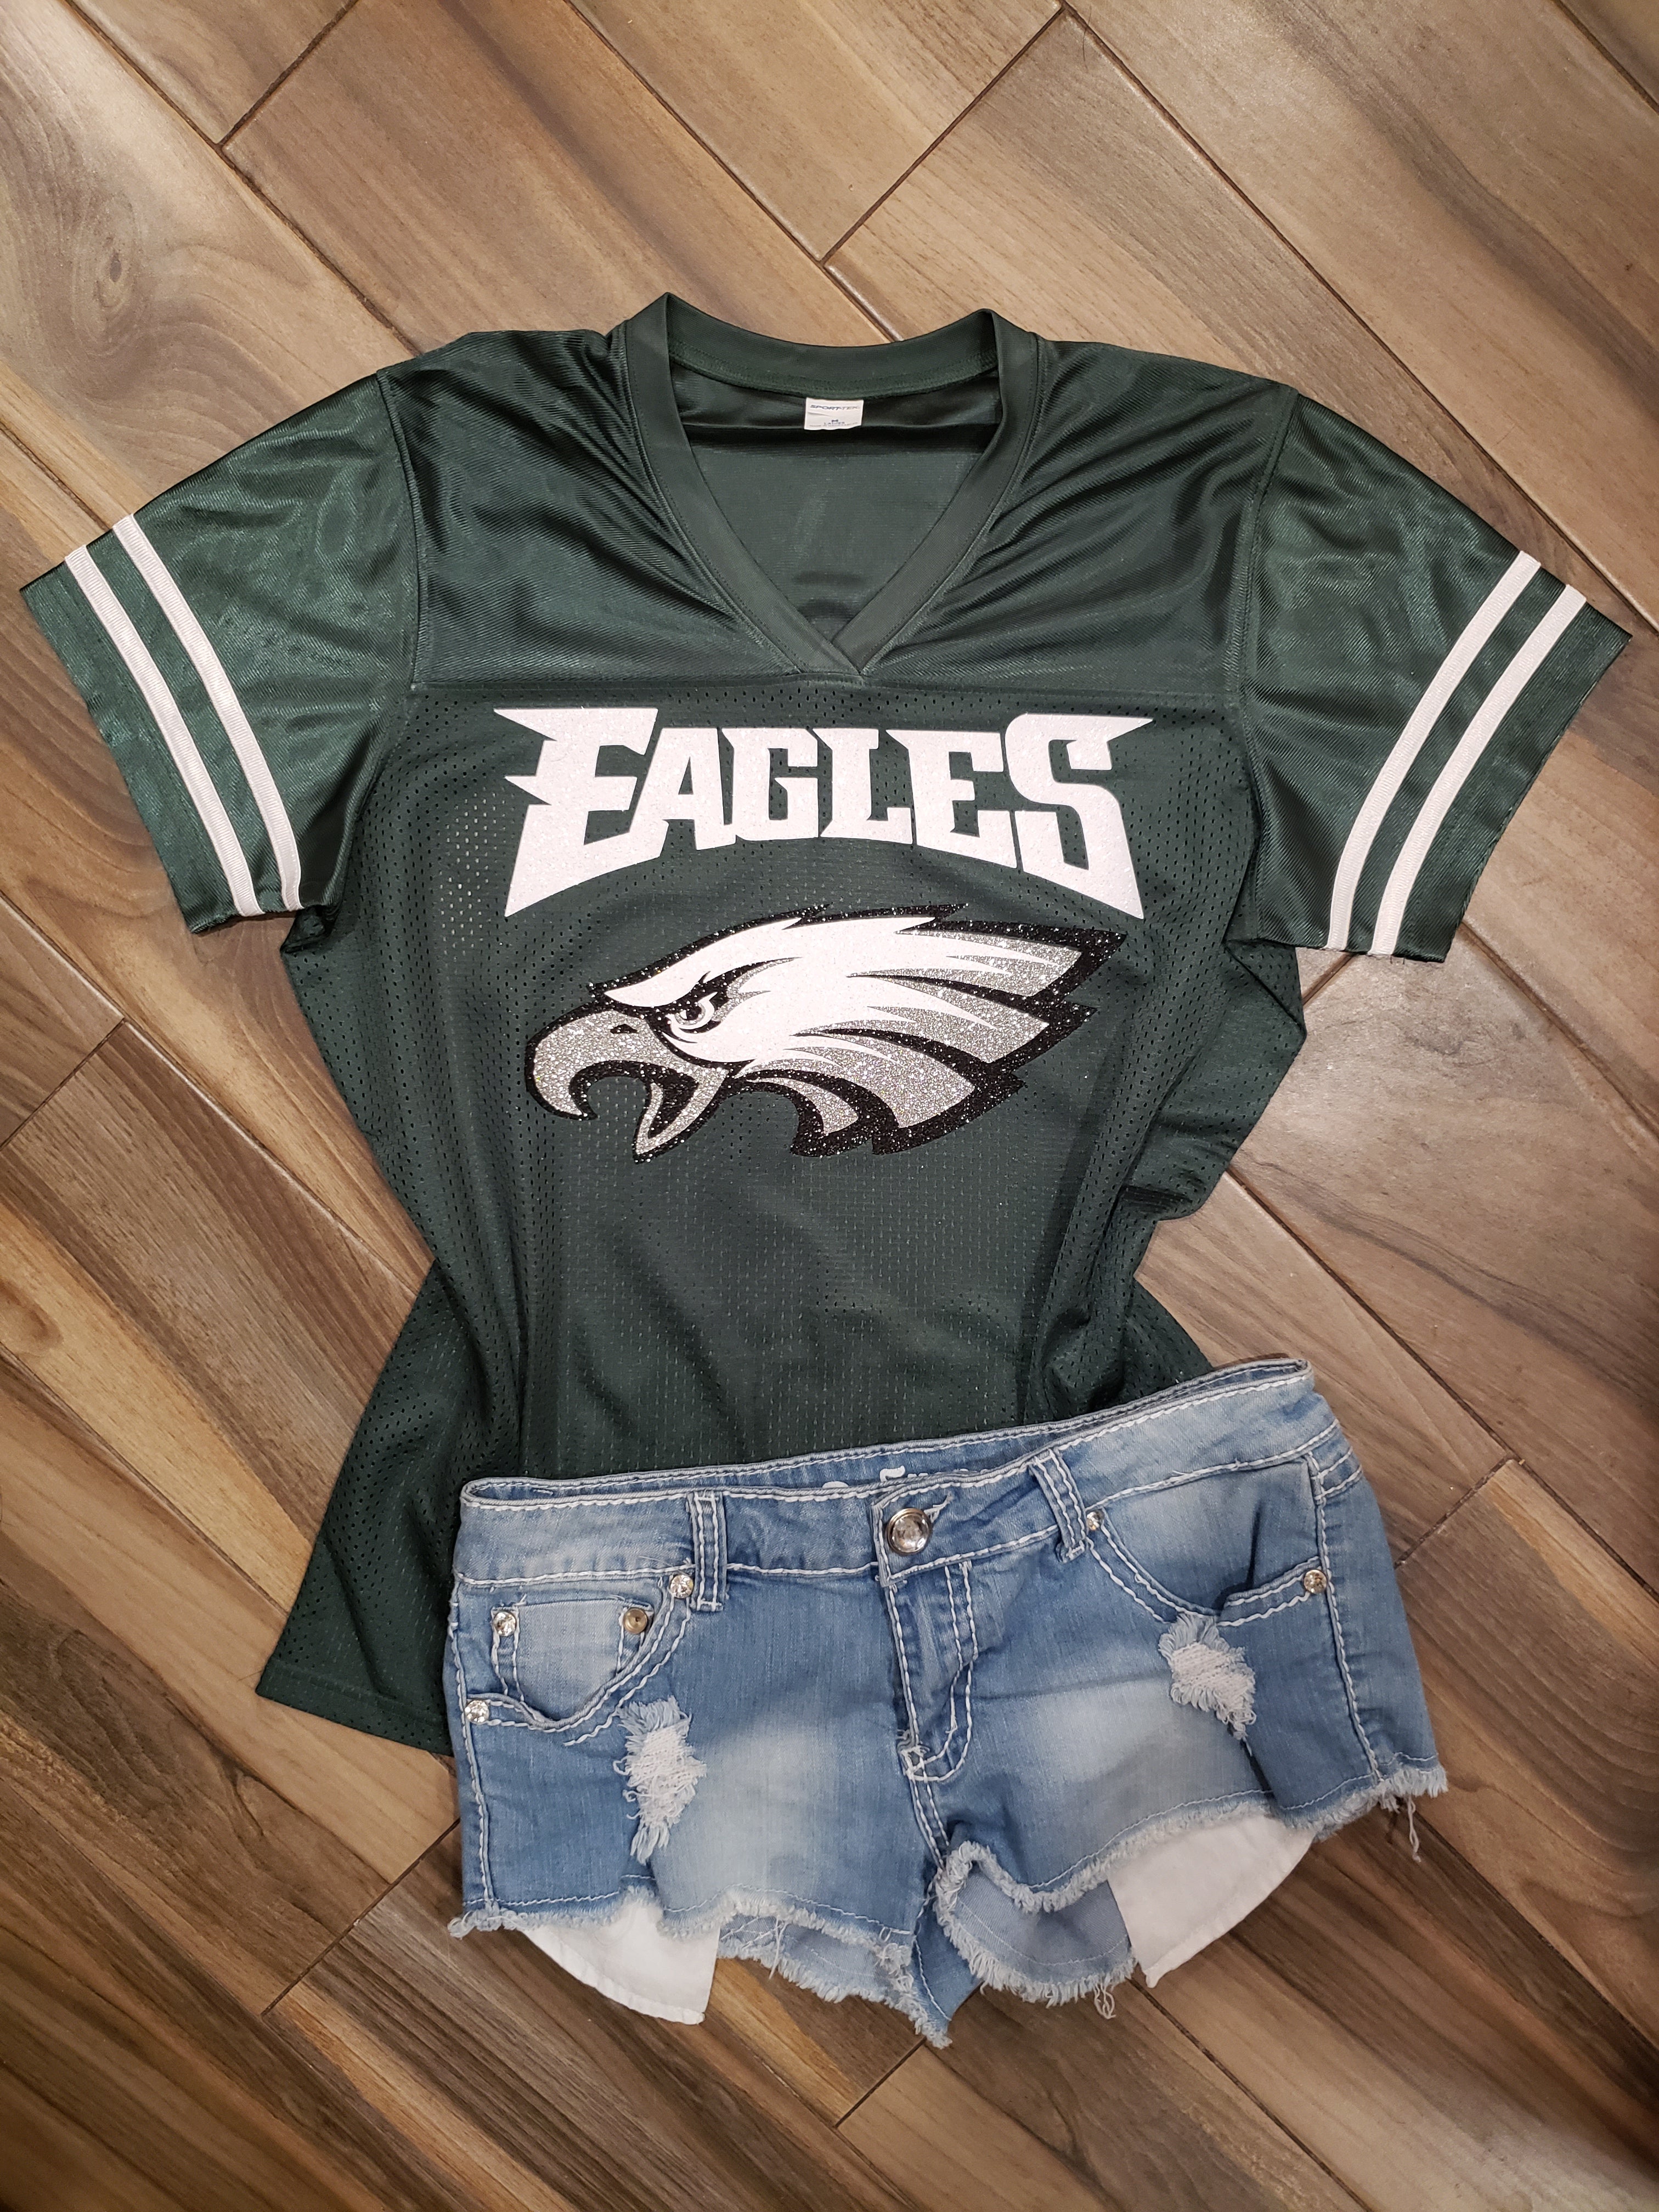 nfl eagles jersey